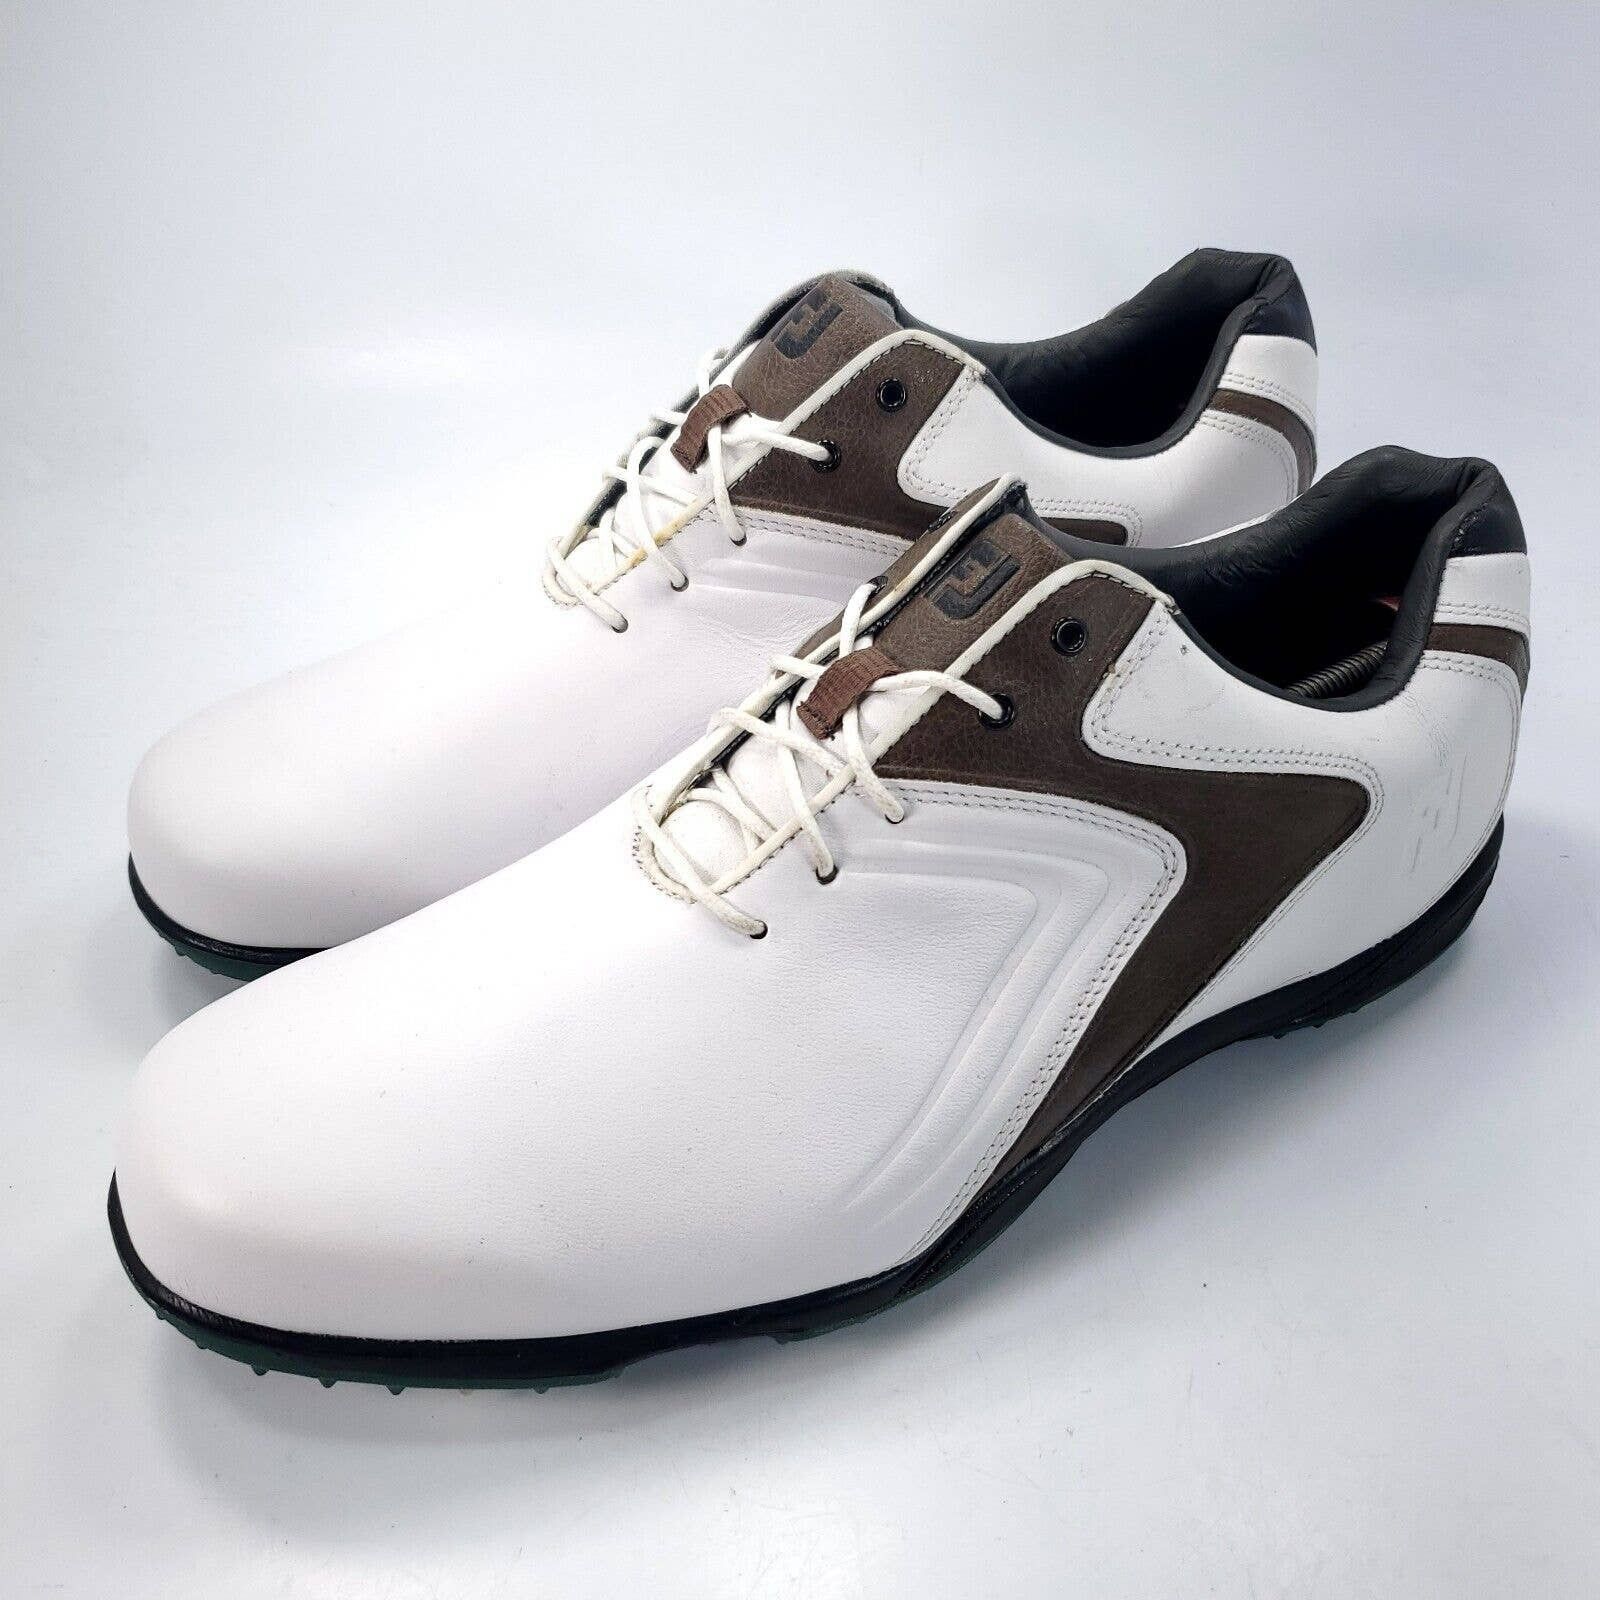 Footjoy Footjoy Hydrolite Golf Shoe Mens Size 13 50024 White Brown ...